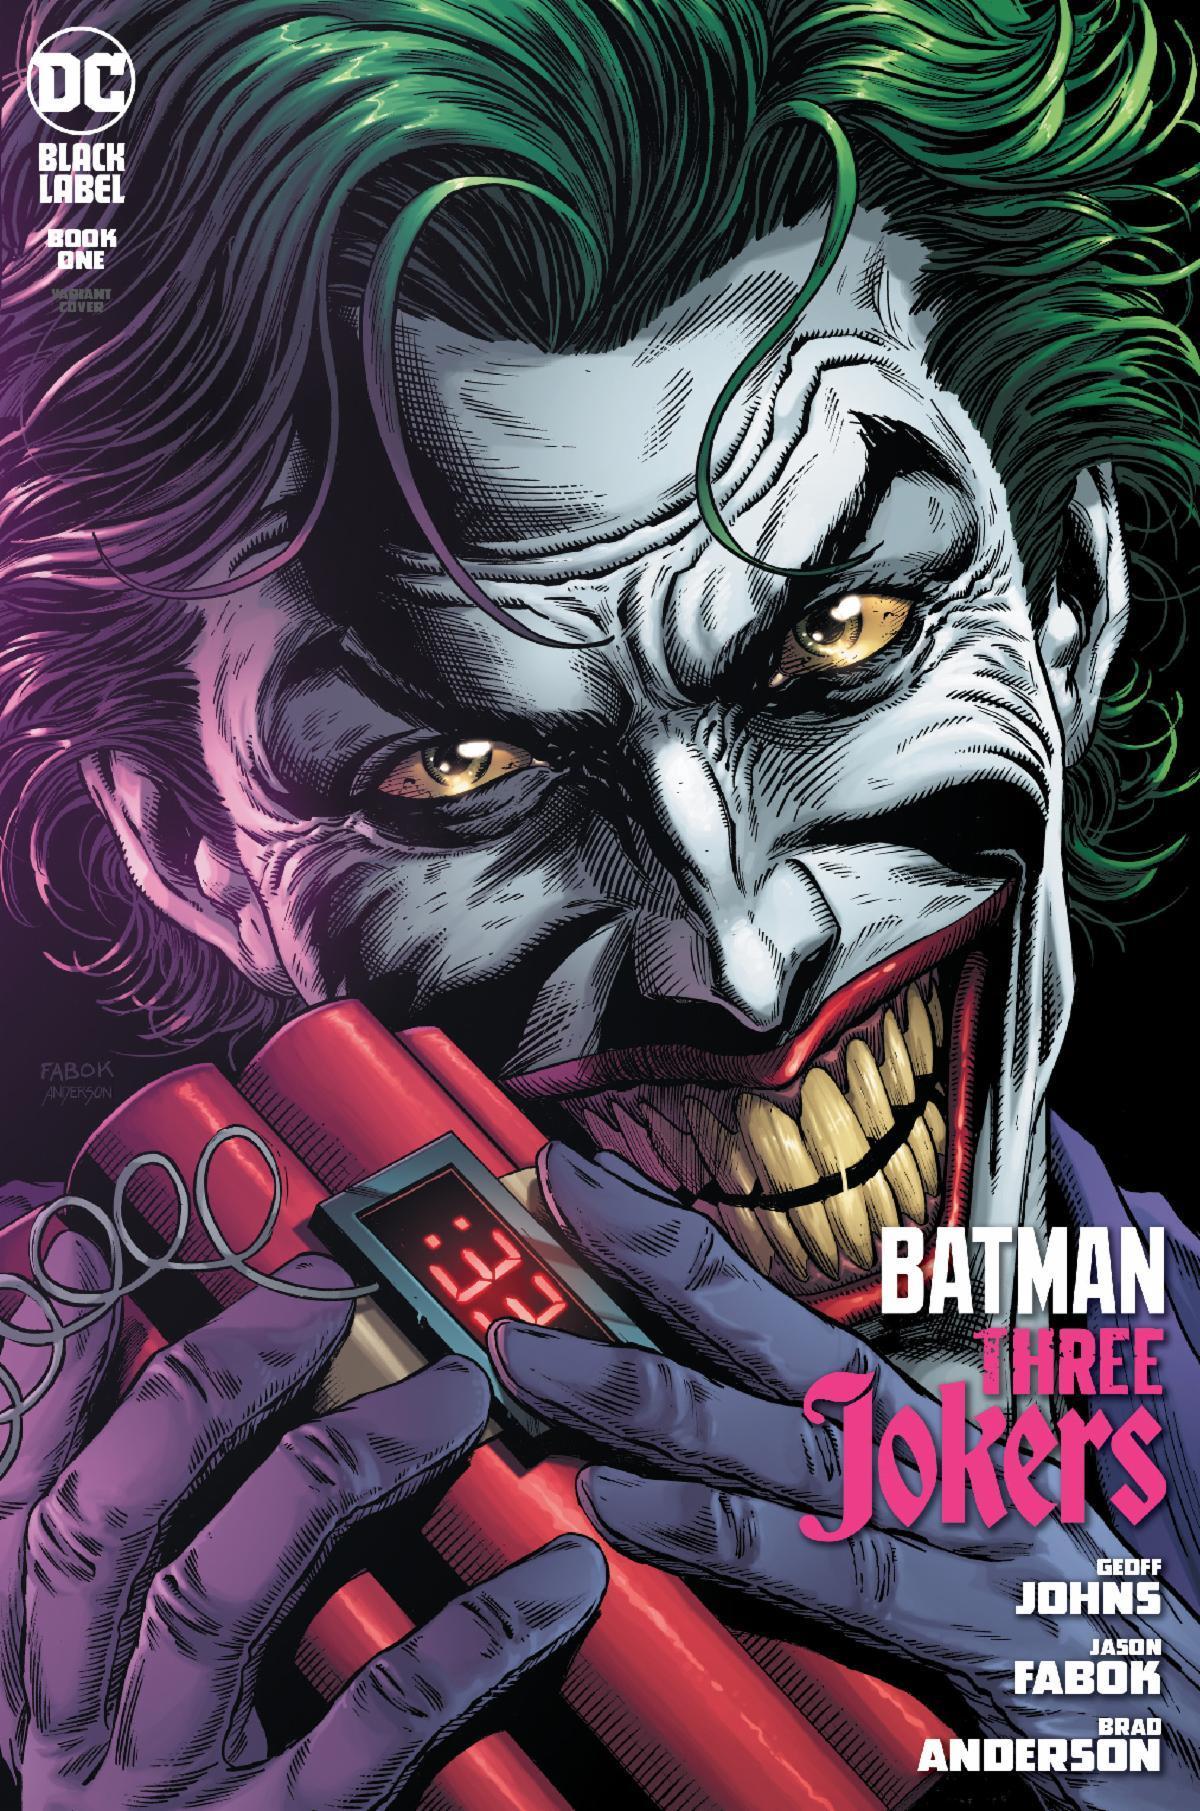 BATMAN THREE JOKERS #1 (OF 3) PREMIUM VAR C BOMB | L.A. Mood Comics and Games